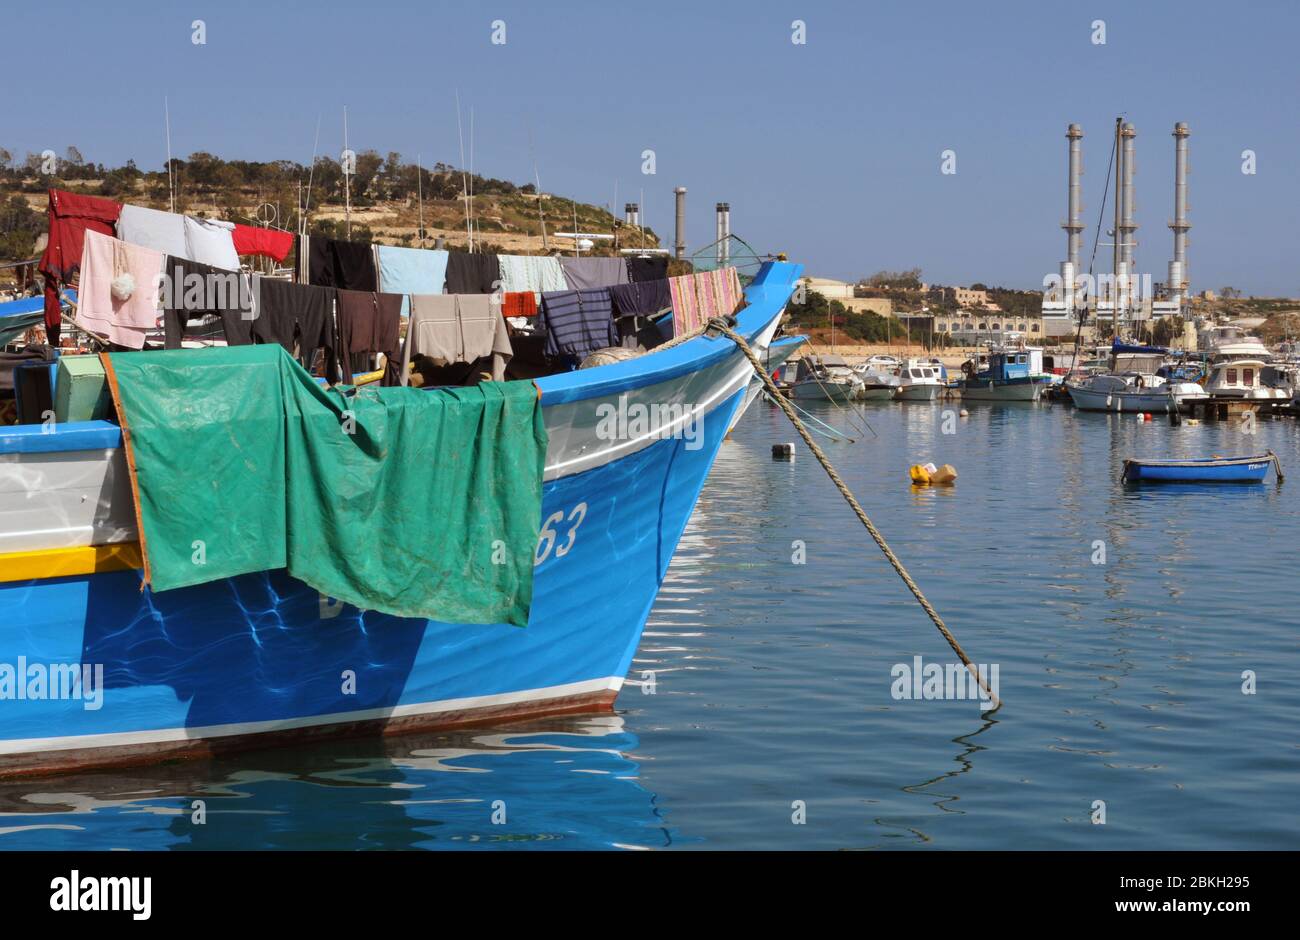 La lavandería se cuelga para secarse a bordo de un barco amarrado en el puerto en el pueblo de Marsaxlokk, Malta. La central eléctrica de Delimara está en segundo plano. Foto de stock